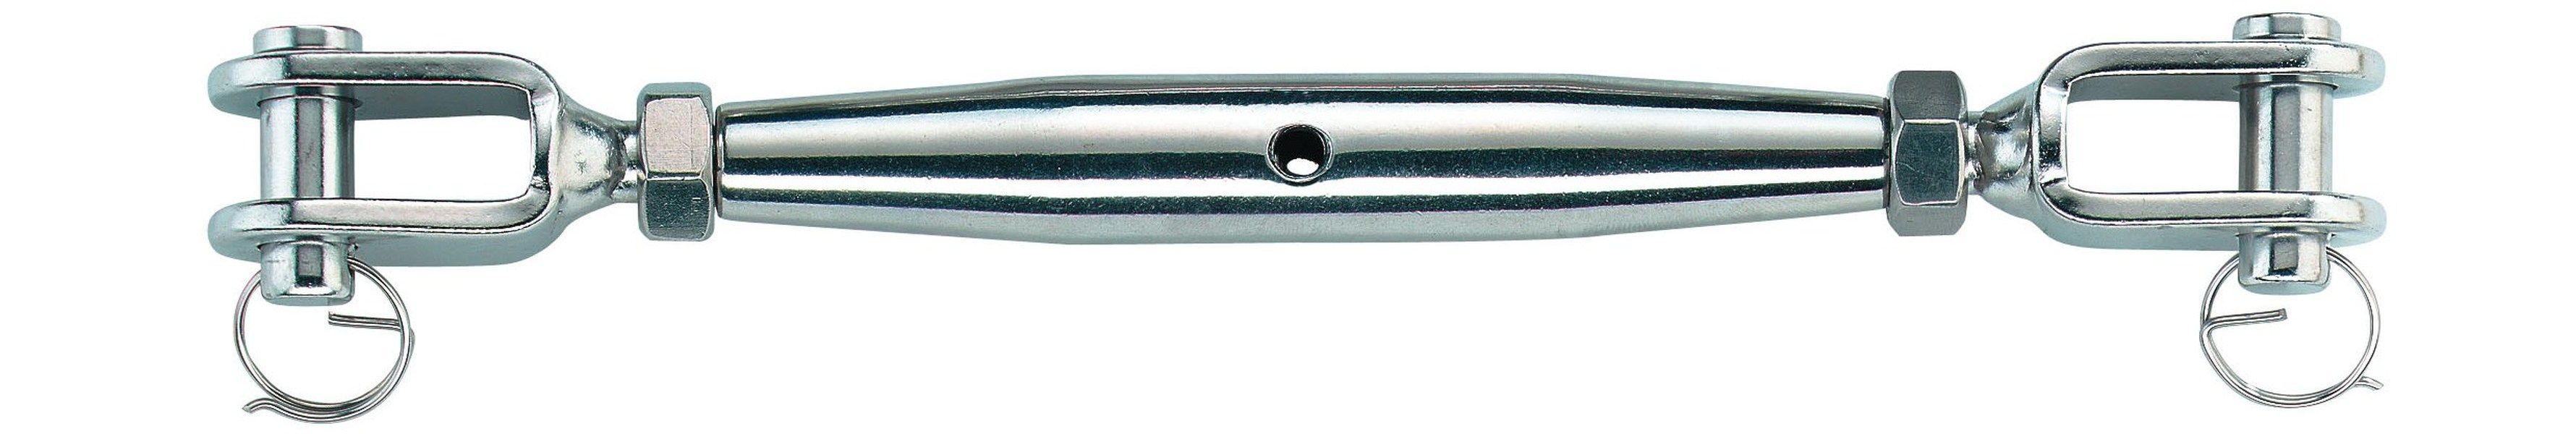 SEILFLECHTER - NIRO-Wantenspanner M6 für 3 mm Seil